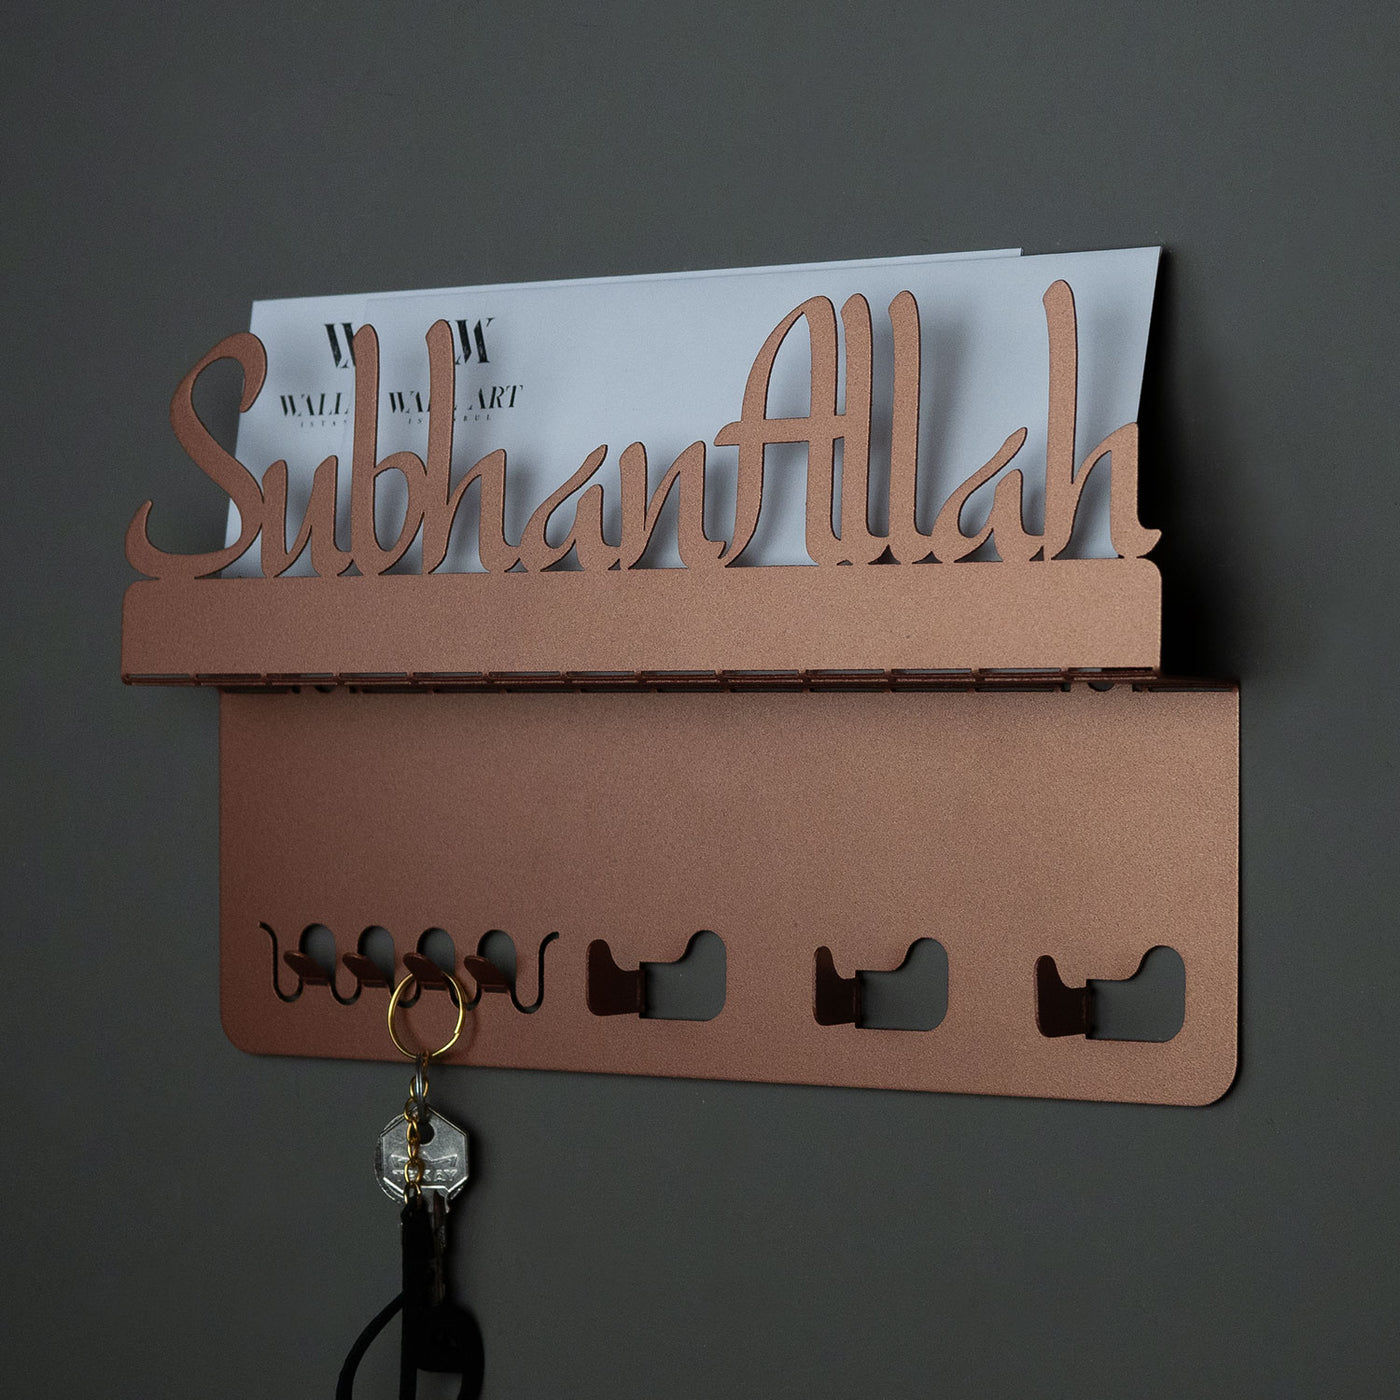 SubhanAllah Metal Wall Key Holder - WAMH028